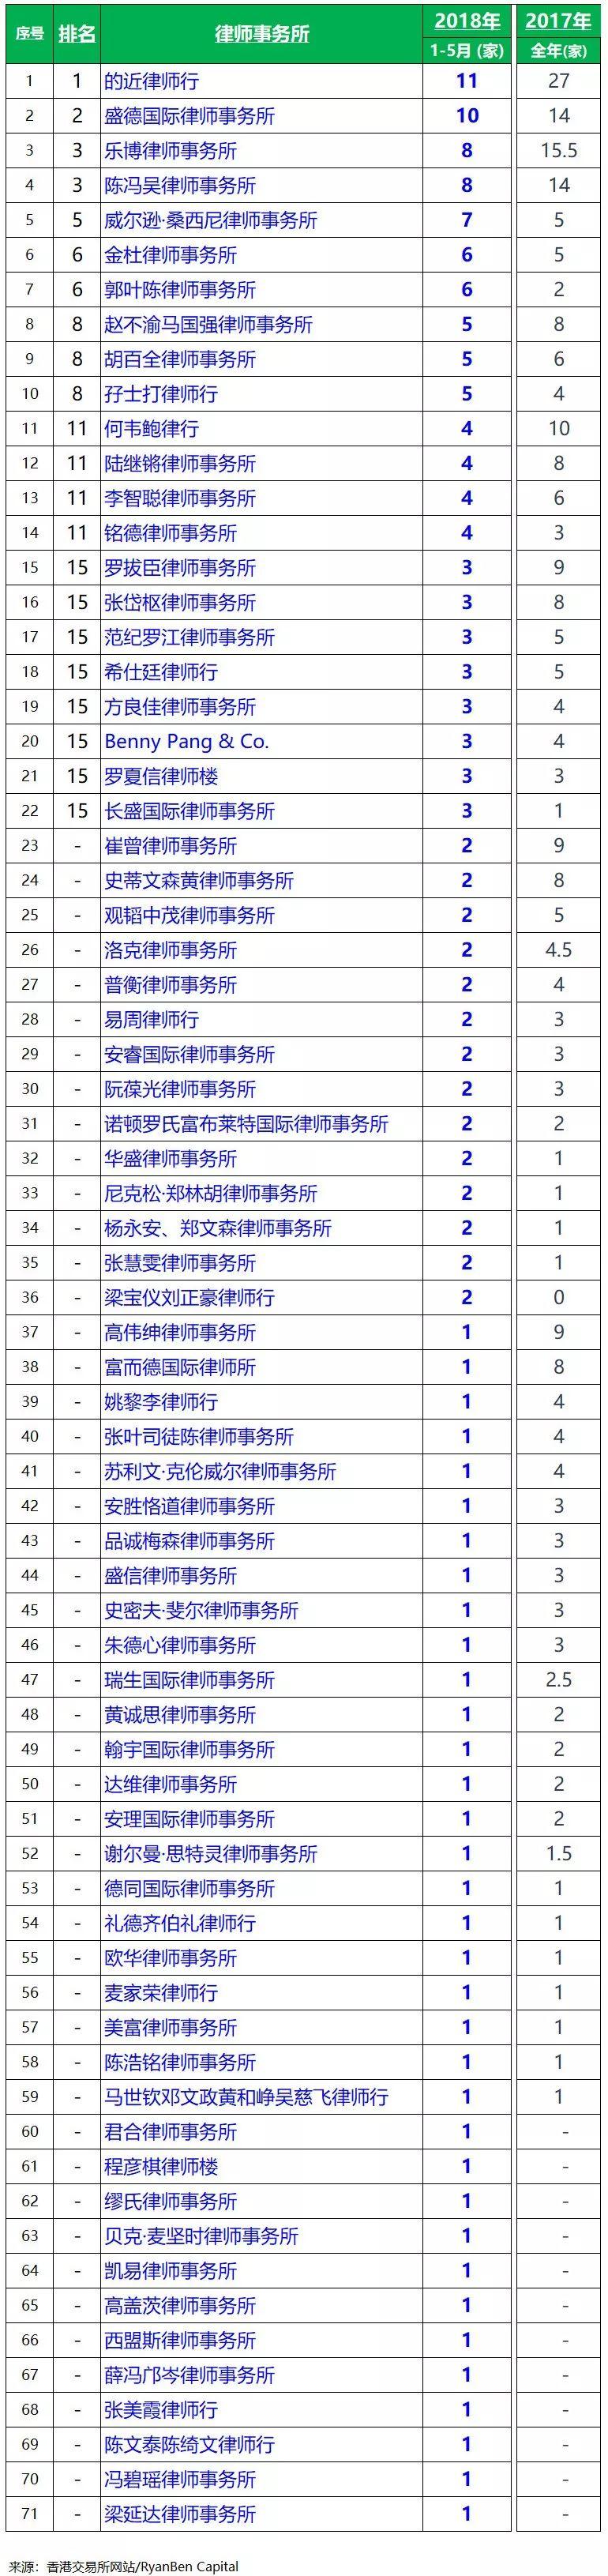 香港IPO上市中介團隊排行榜(2018年1-5月)